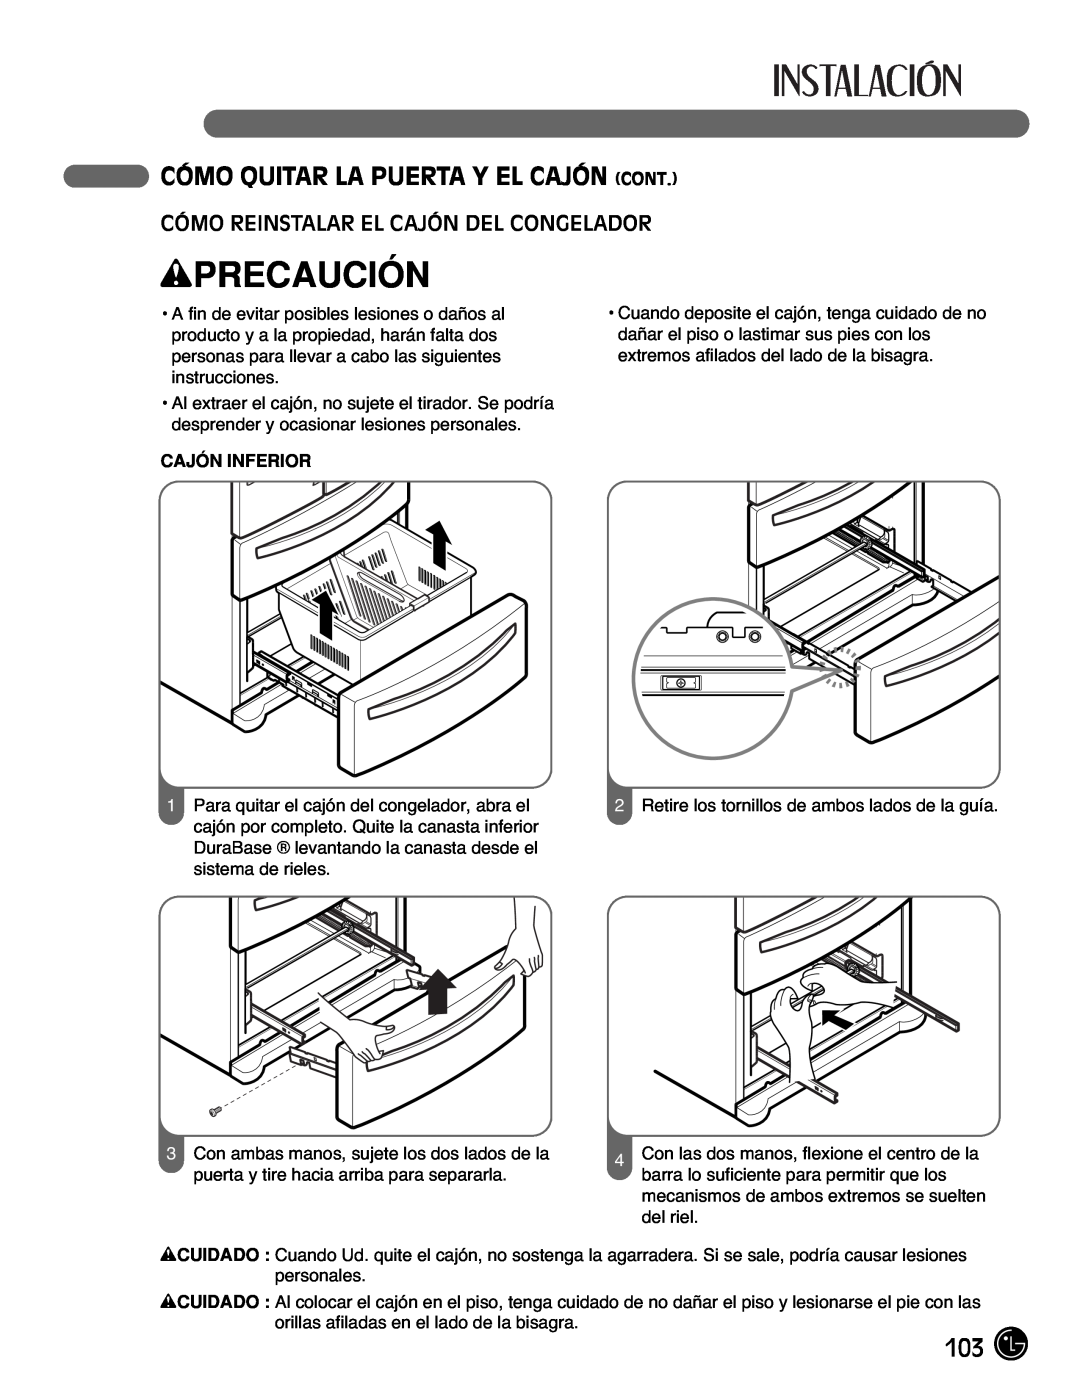 LG Electronics LMX21971 manual Cómo Reinstalar El Cajón Del Congelador, wPRECAUCIÓN, Cómo Quitar La Puerta Y El Cajón Cont 